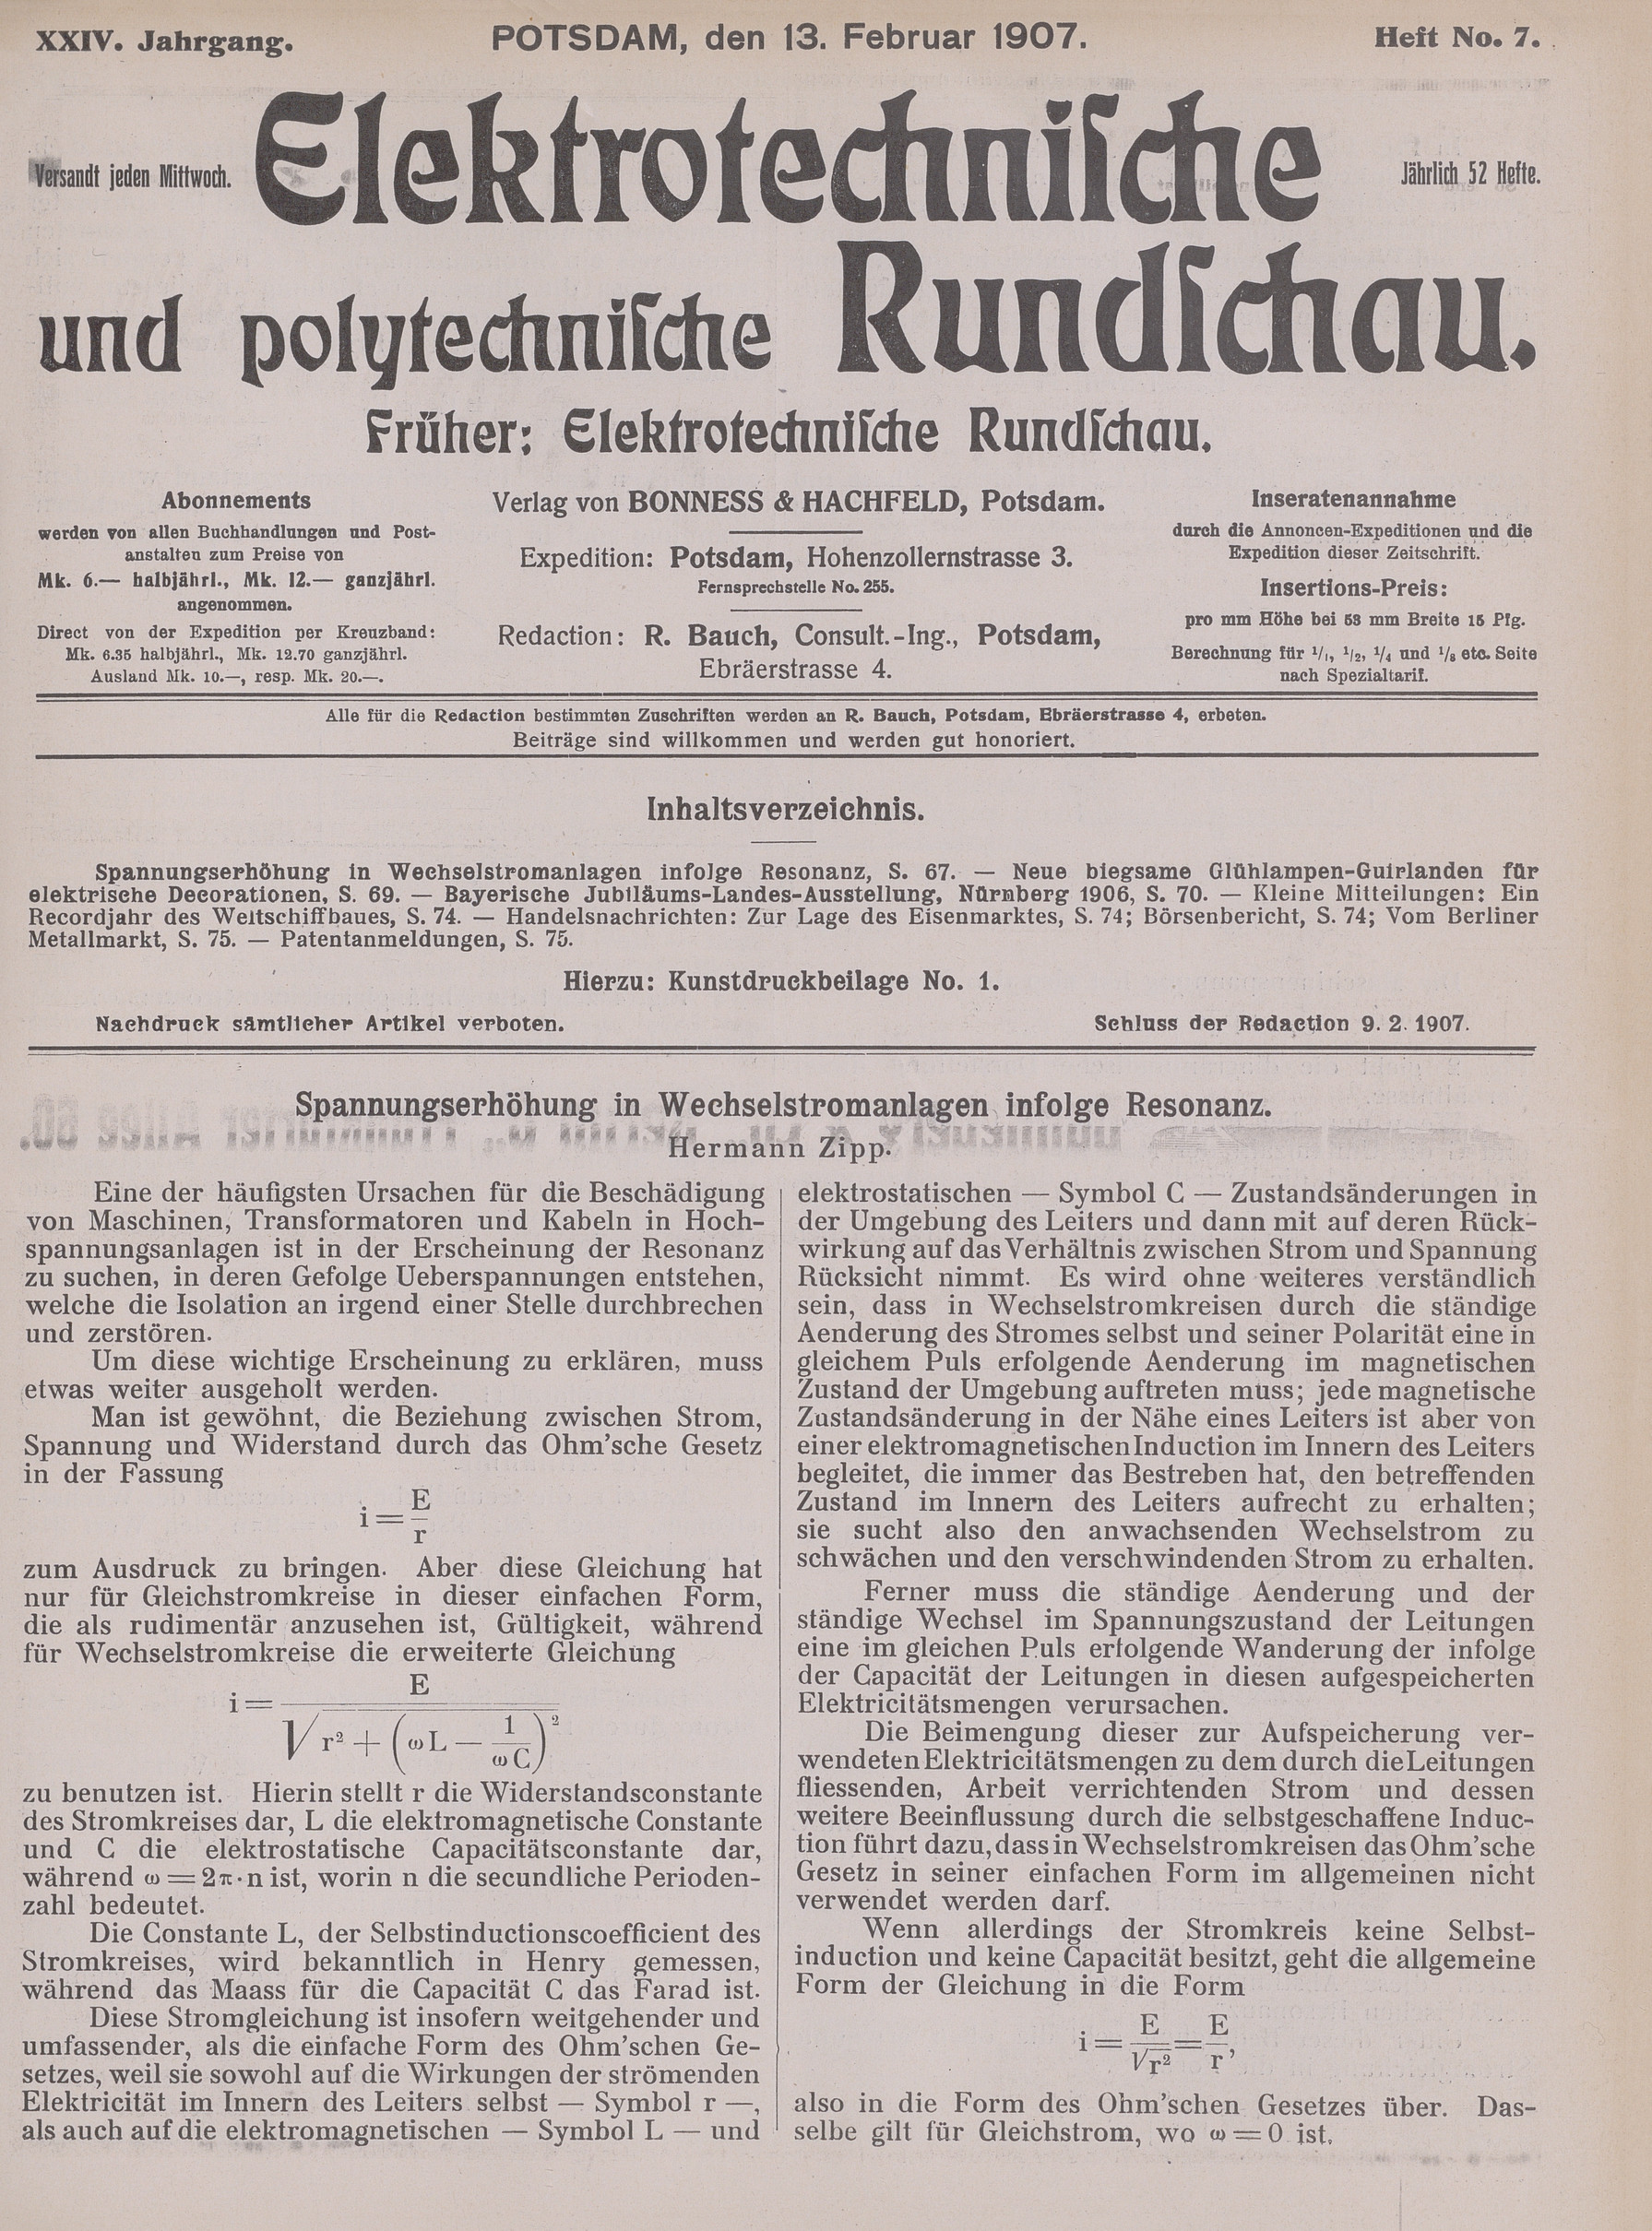 Elektrotechnische und polytechnische Rundschau, XXIV. Jahrgang, Heft No. 7